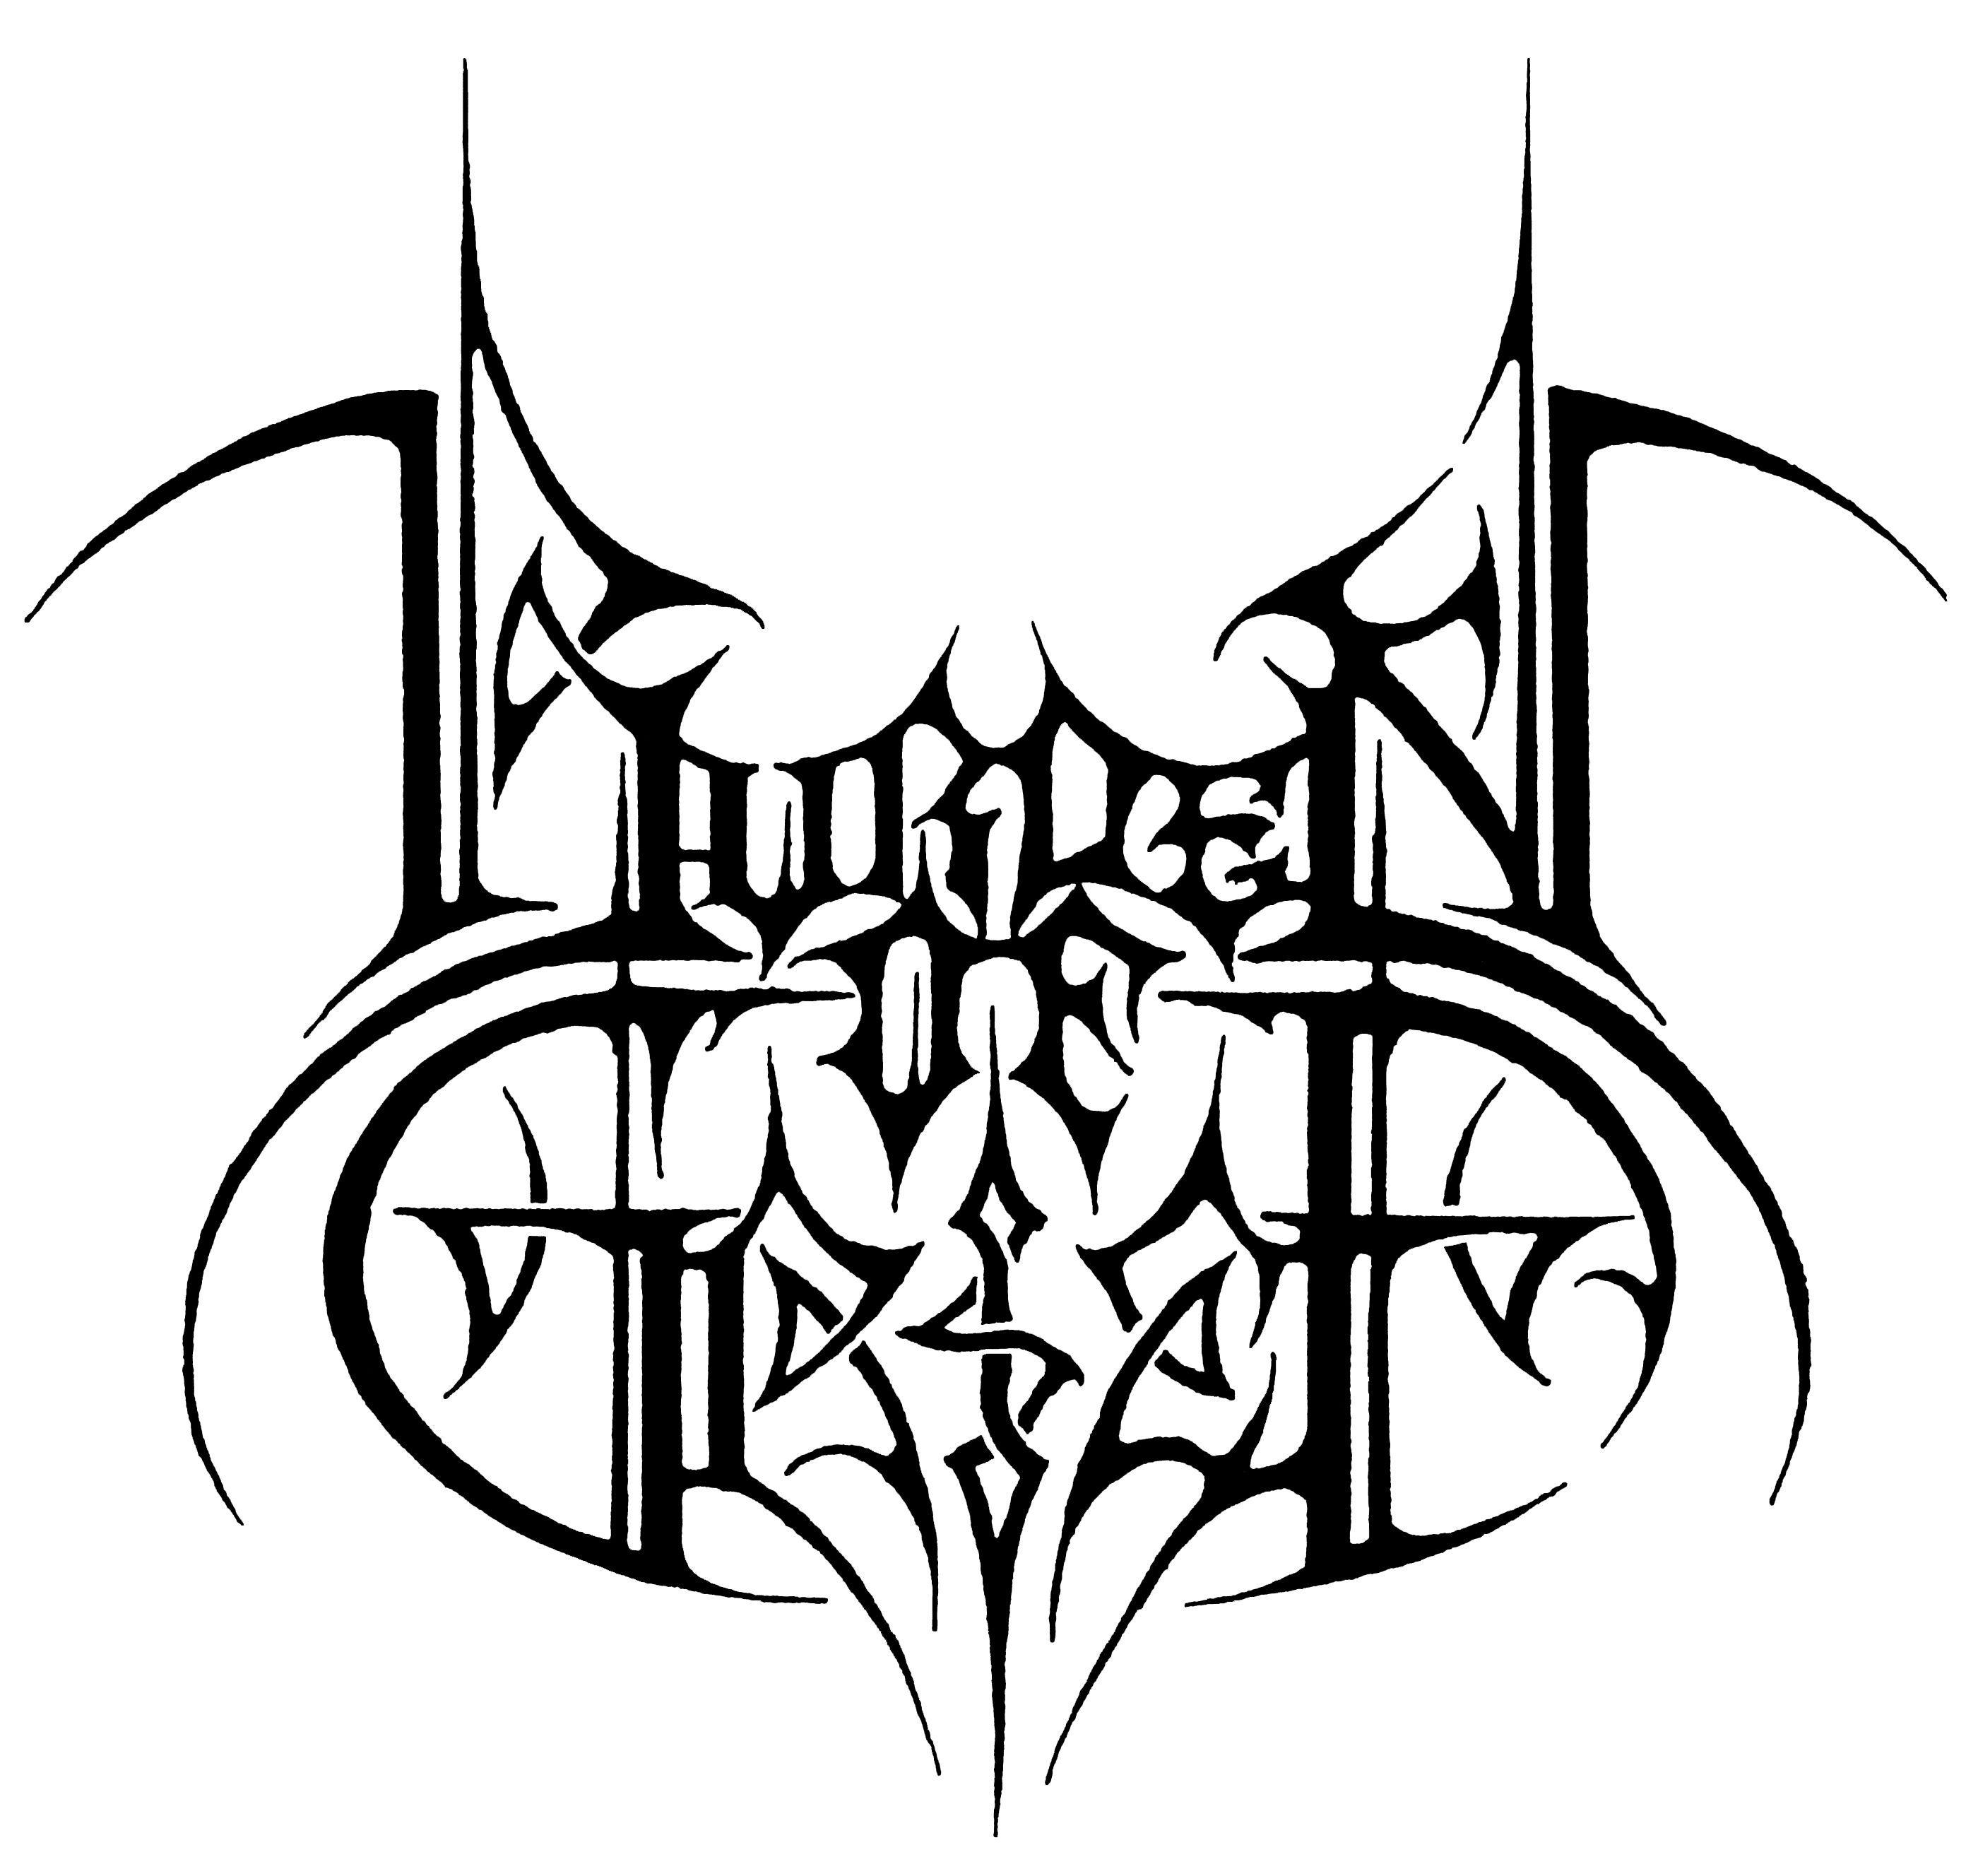 Burden Logo - Burden of Grief logo. noah. Metal band logos, Logos, Metal